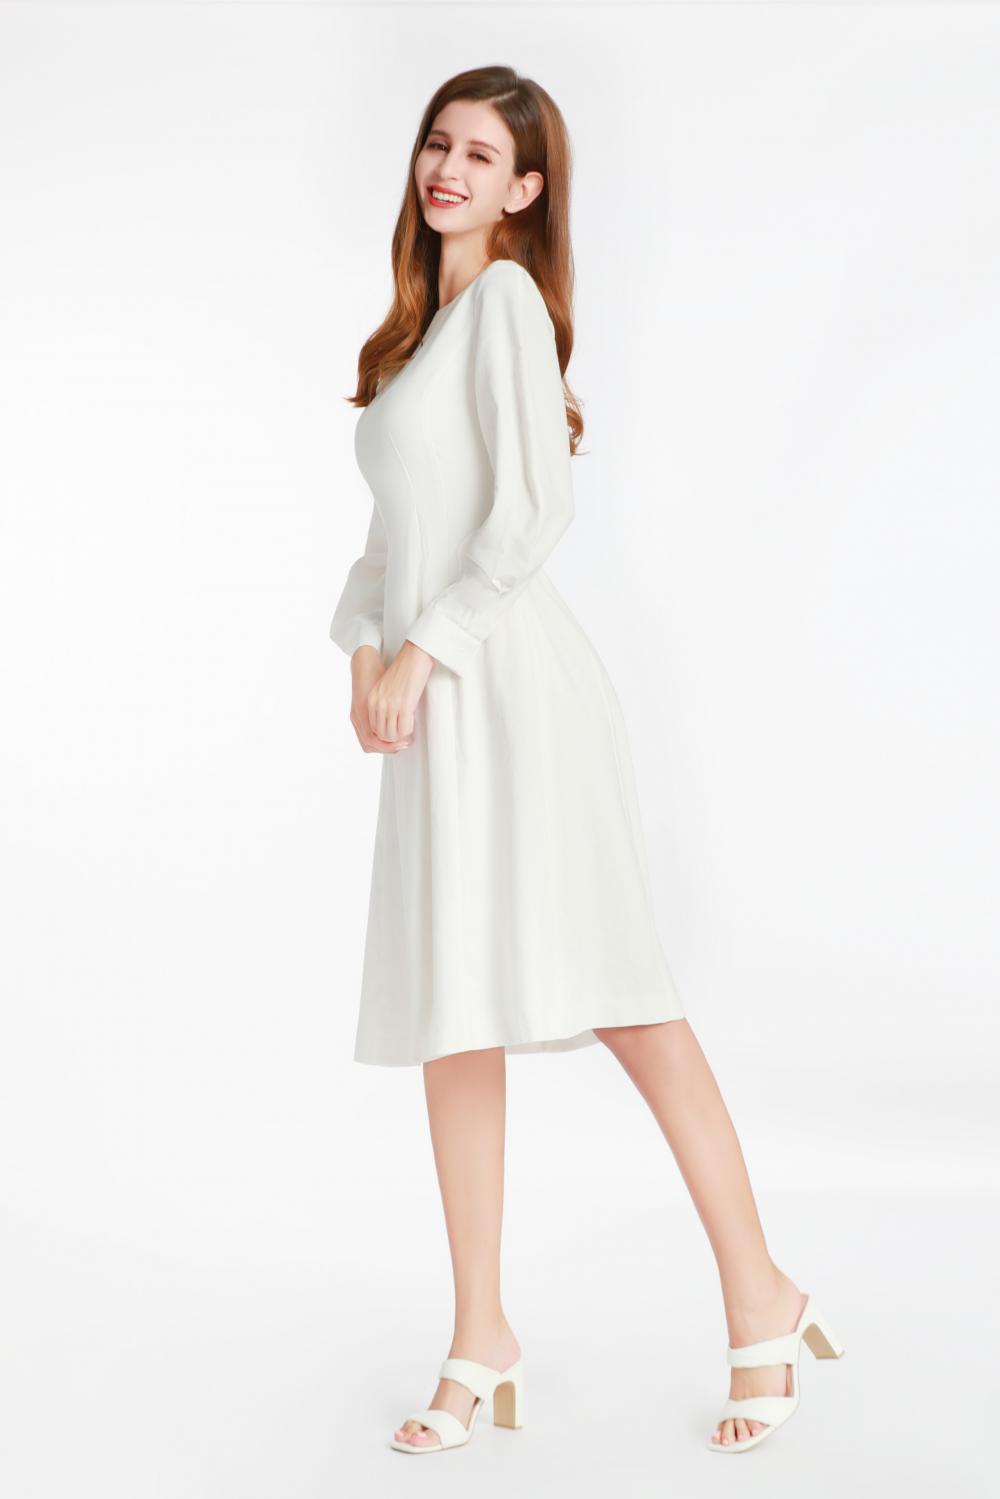 एक छोटे गोल कॉलर के साथ सफेद लंबी आस्तीन वाली पोशाक